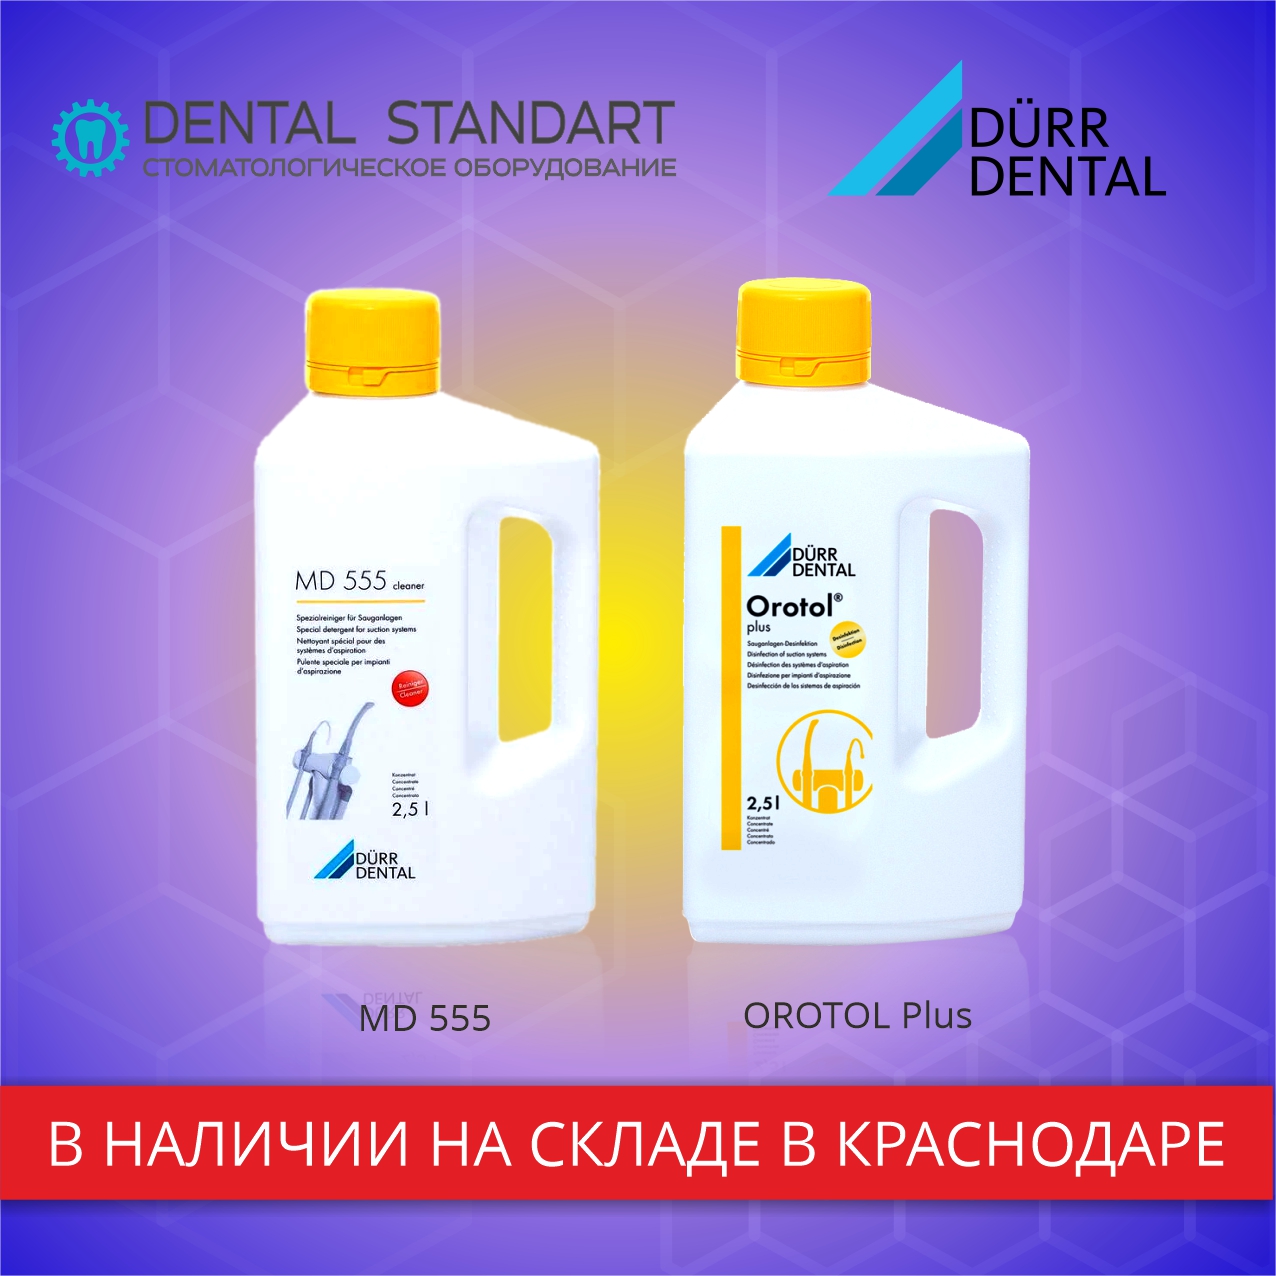 Стоматологическое оборудование и средства очистки Durr Dental в наличии в Краснодаре.